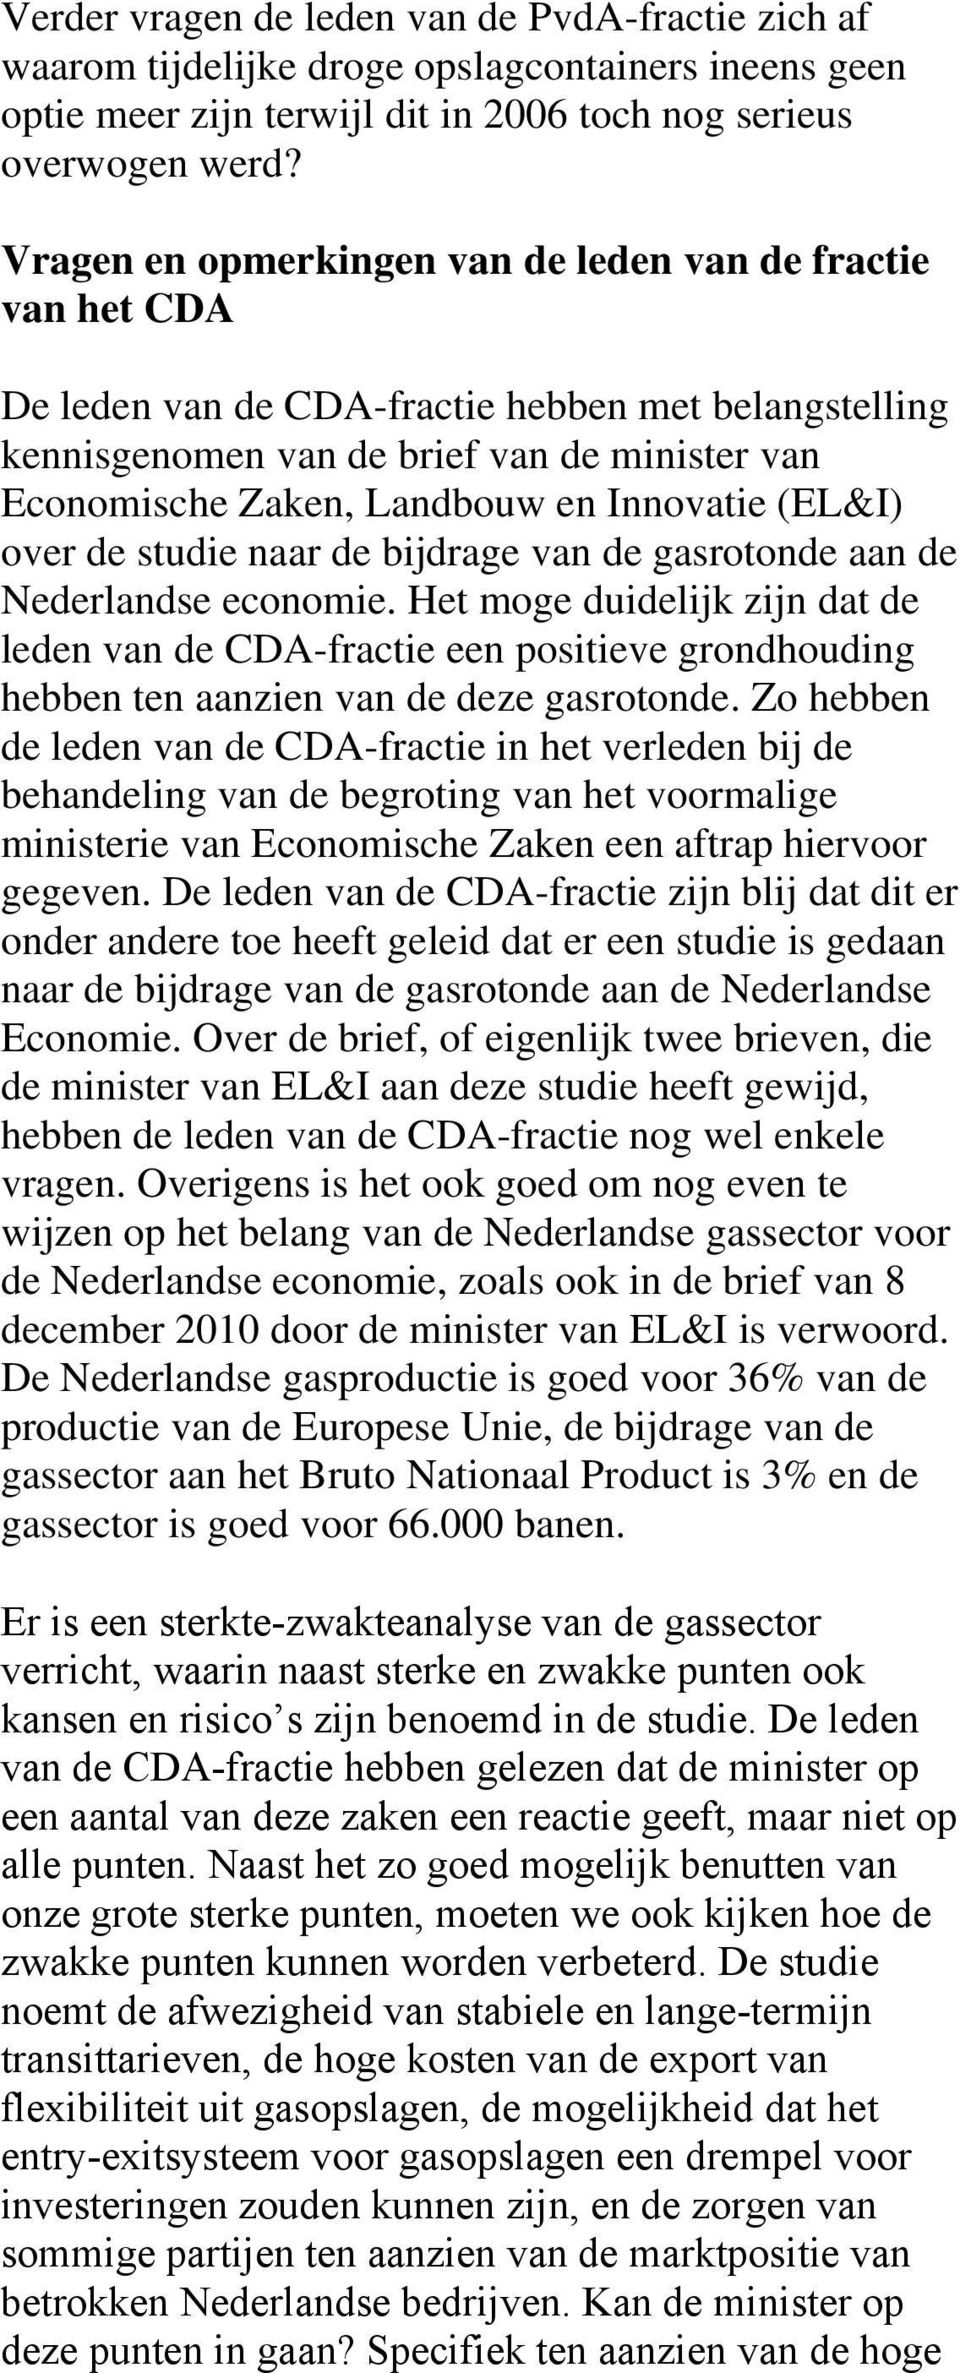 Innovatie (EL&I) over de studie naar de bijdrage van de gasrotonde aan de Nederlandse economie.